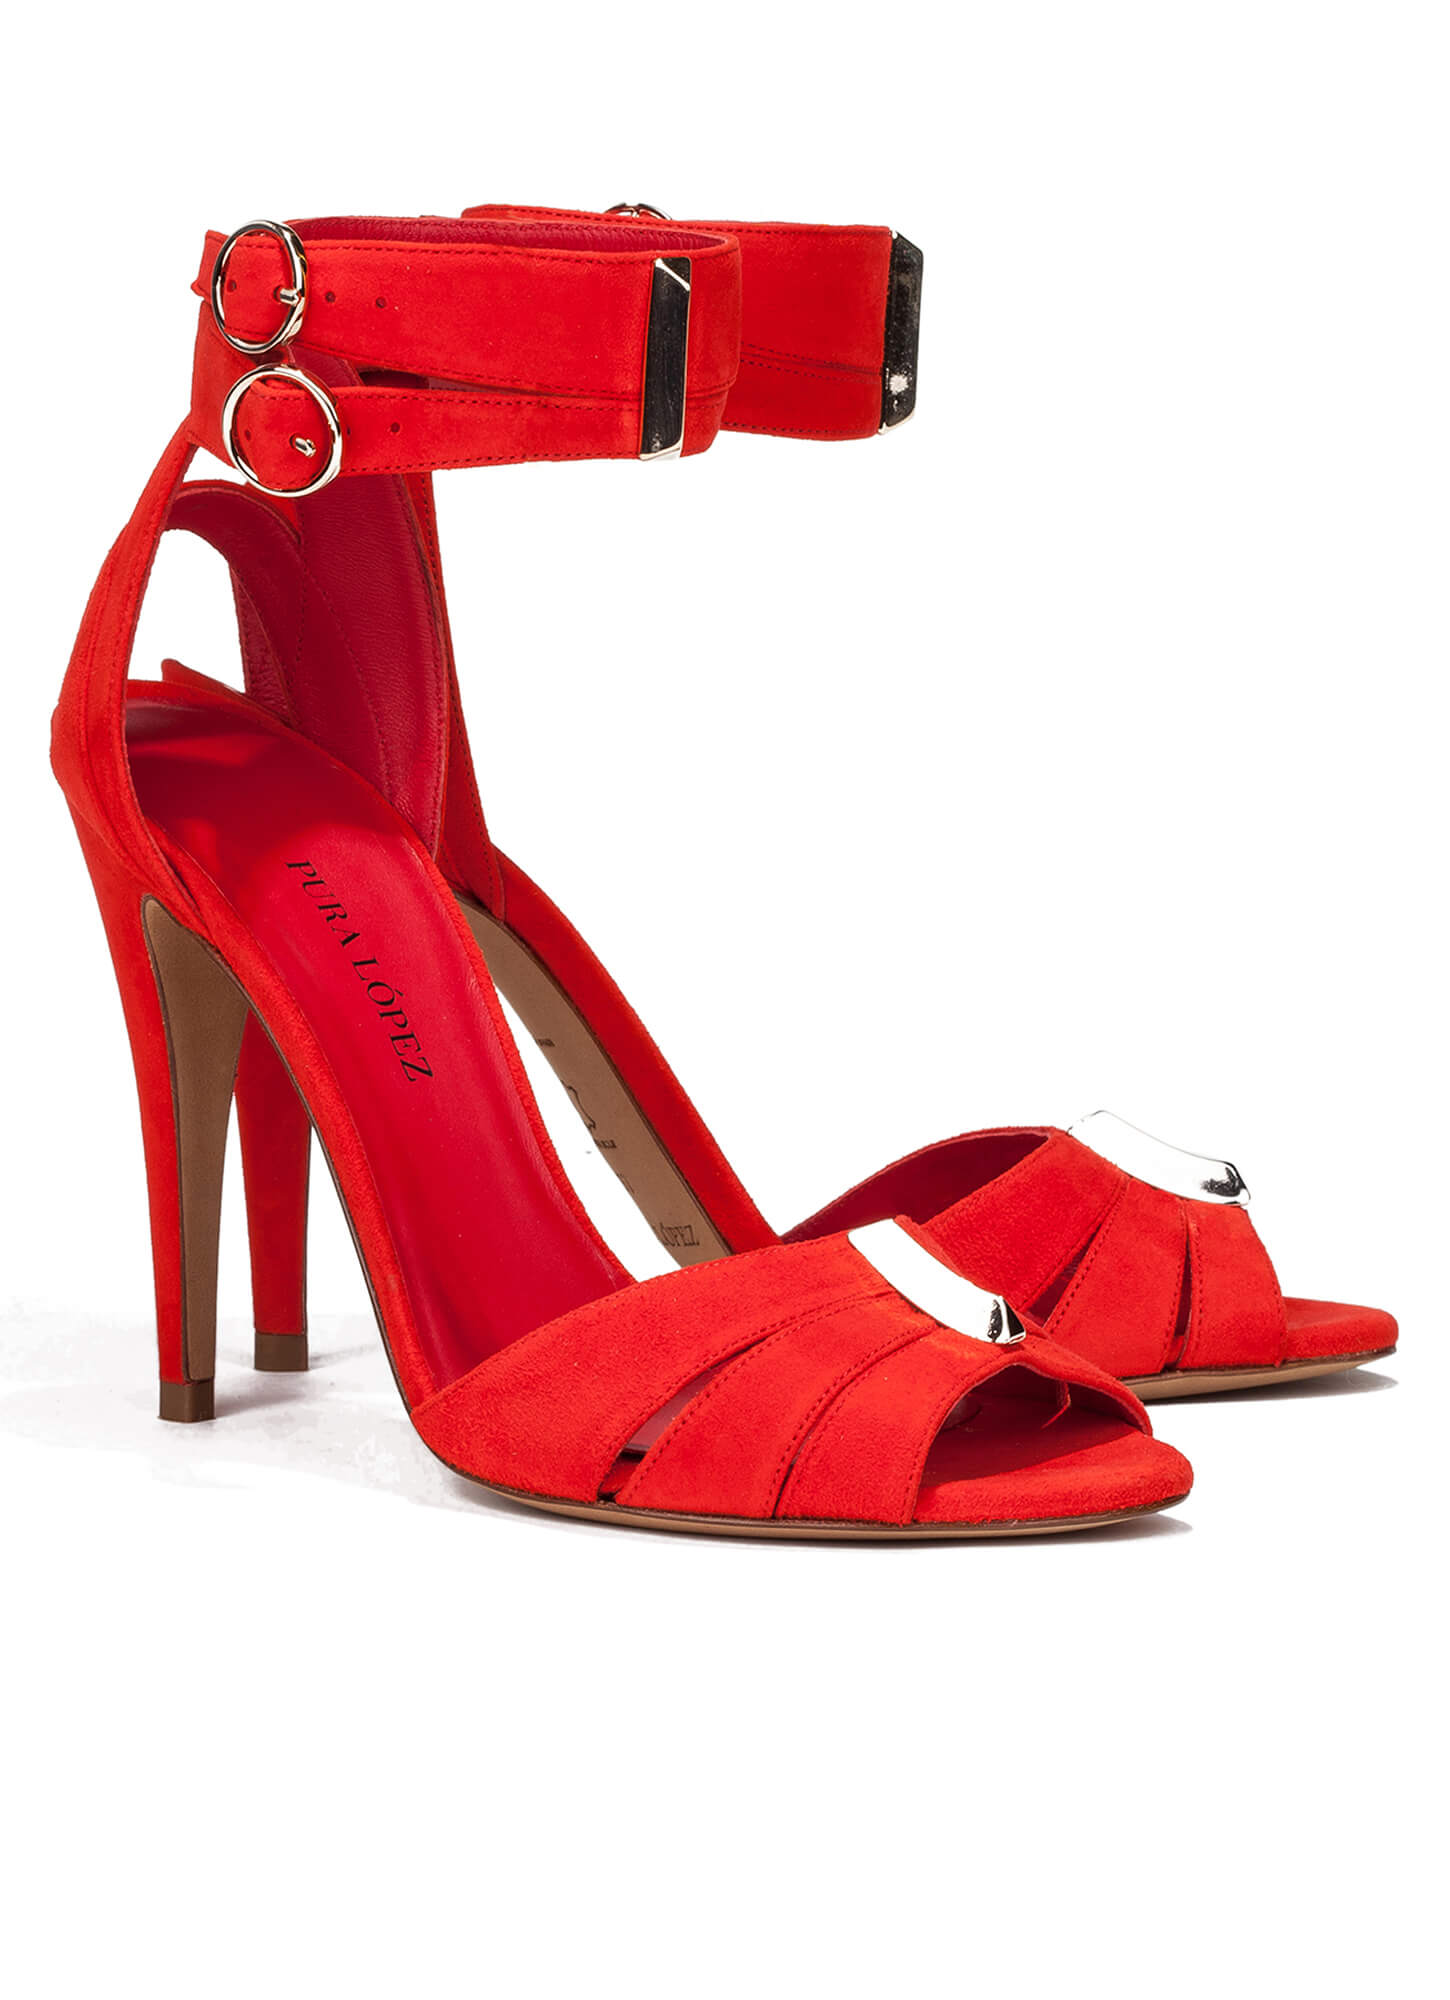 High heel sandals in red suede - online shoe store Pura Lopez . PURA LOPEZ